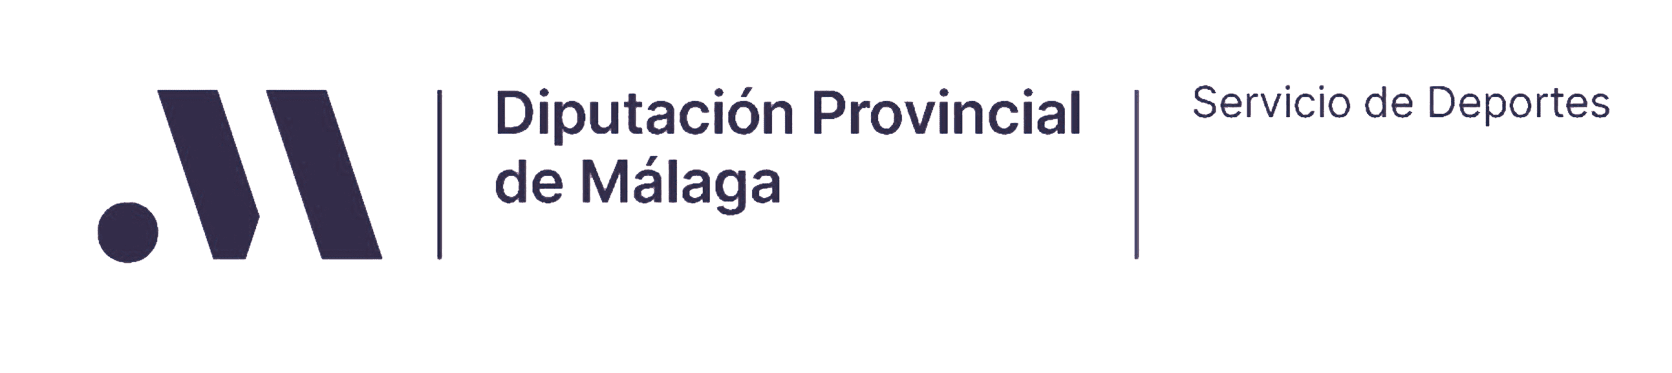 logo_malaga2